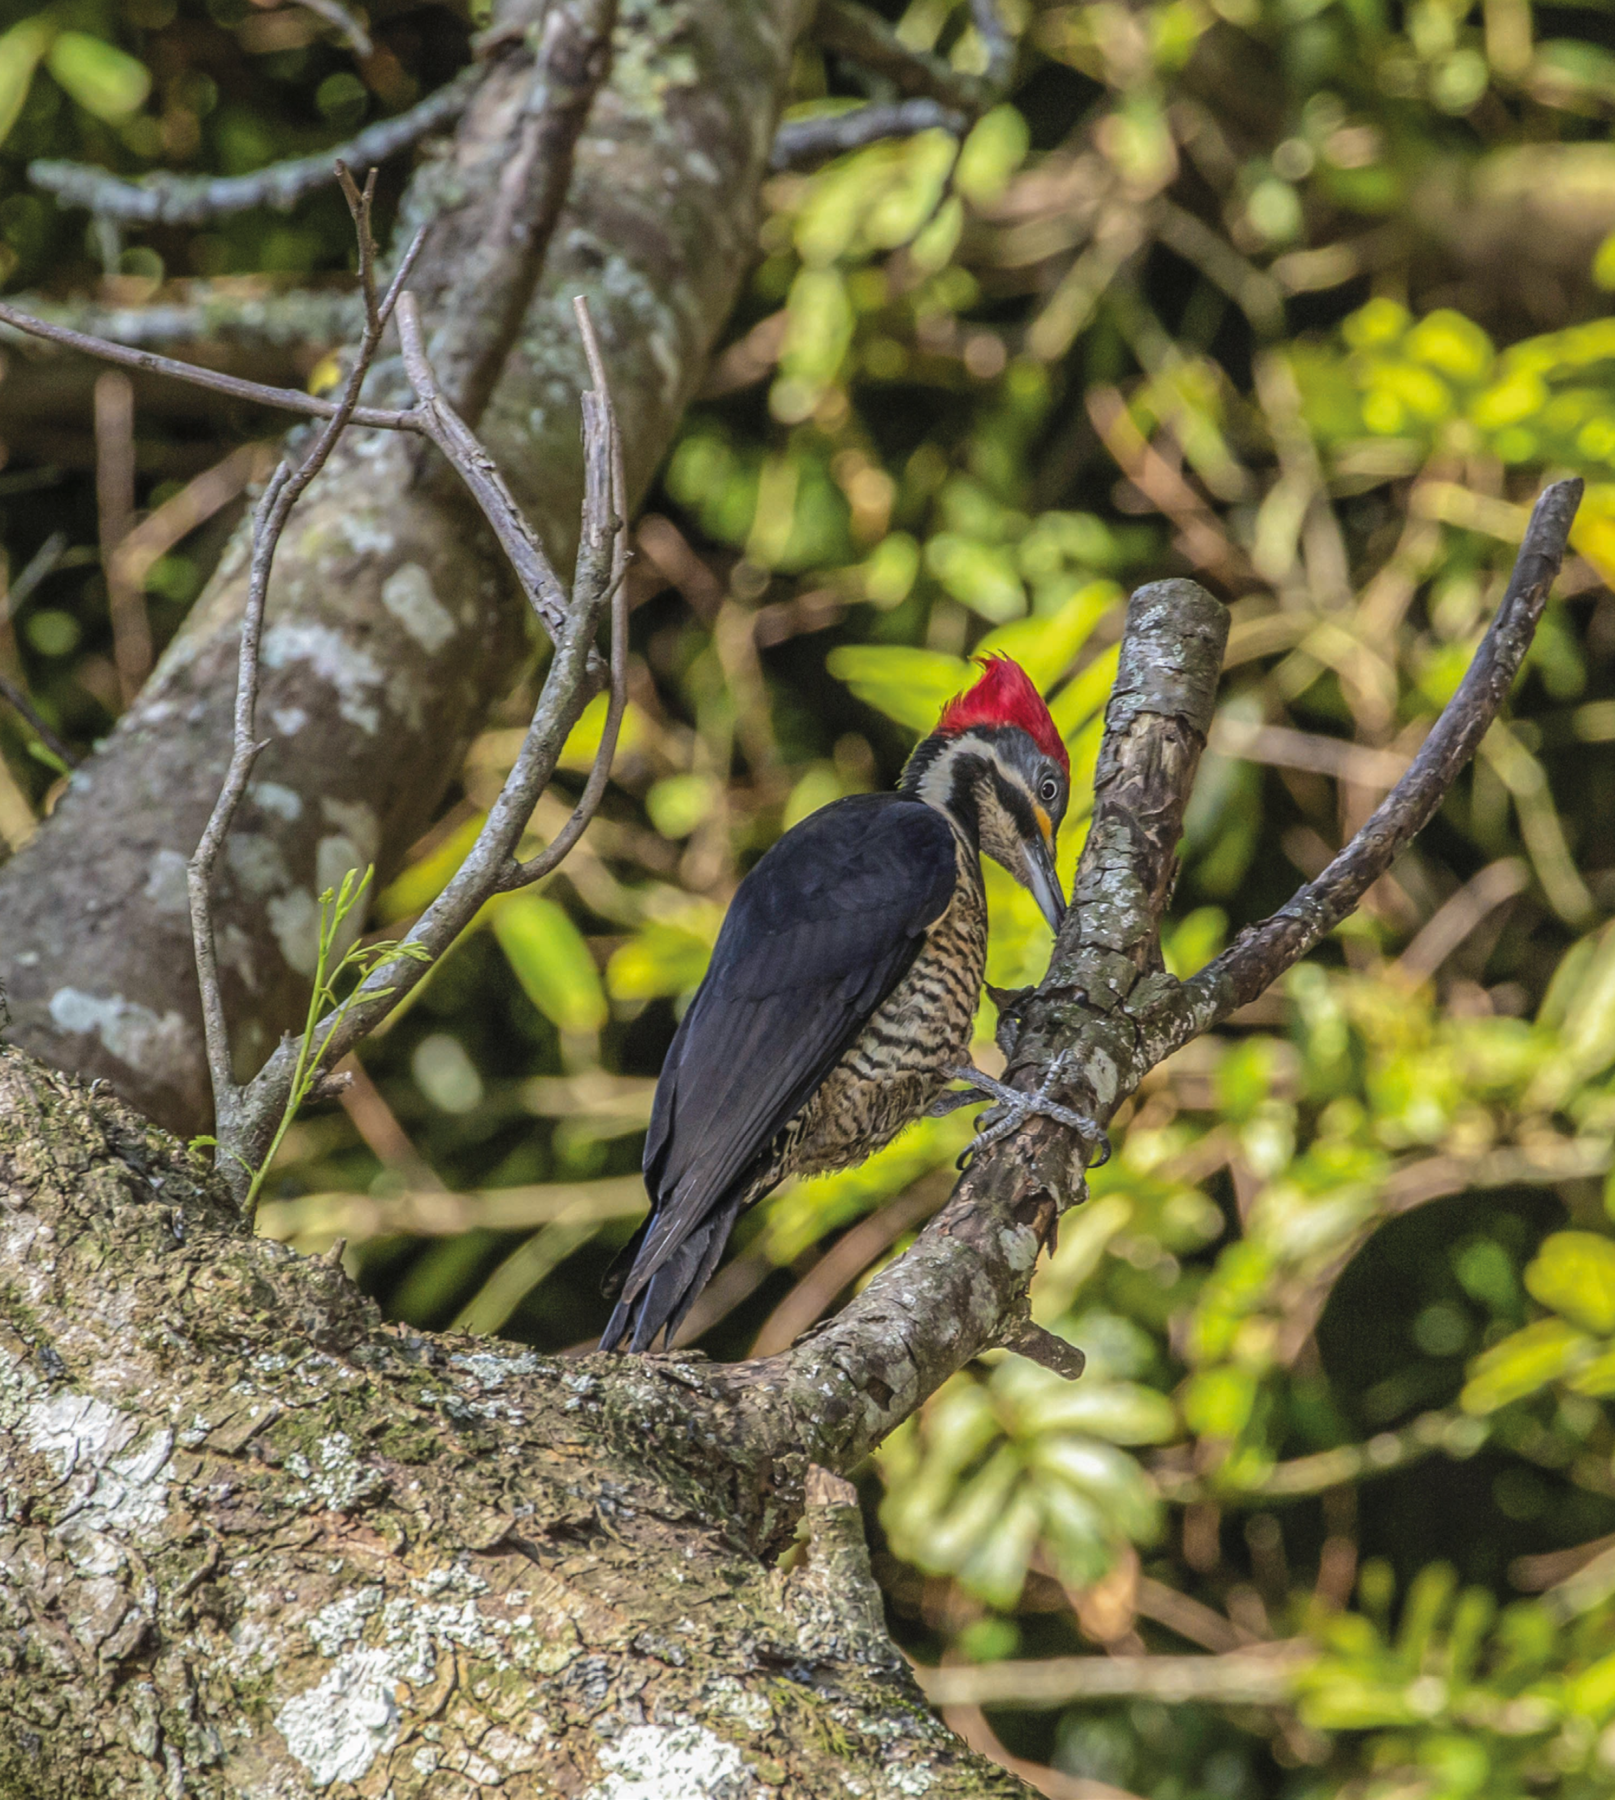 Fotografia. Ave com penas pretas nas asas e vermelhas no topo da cabeça. Ele está empoleirado em um galho de árvore e está com o bico no galho.